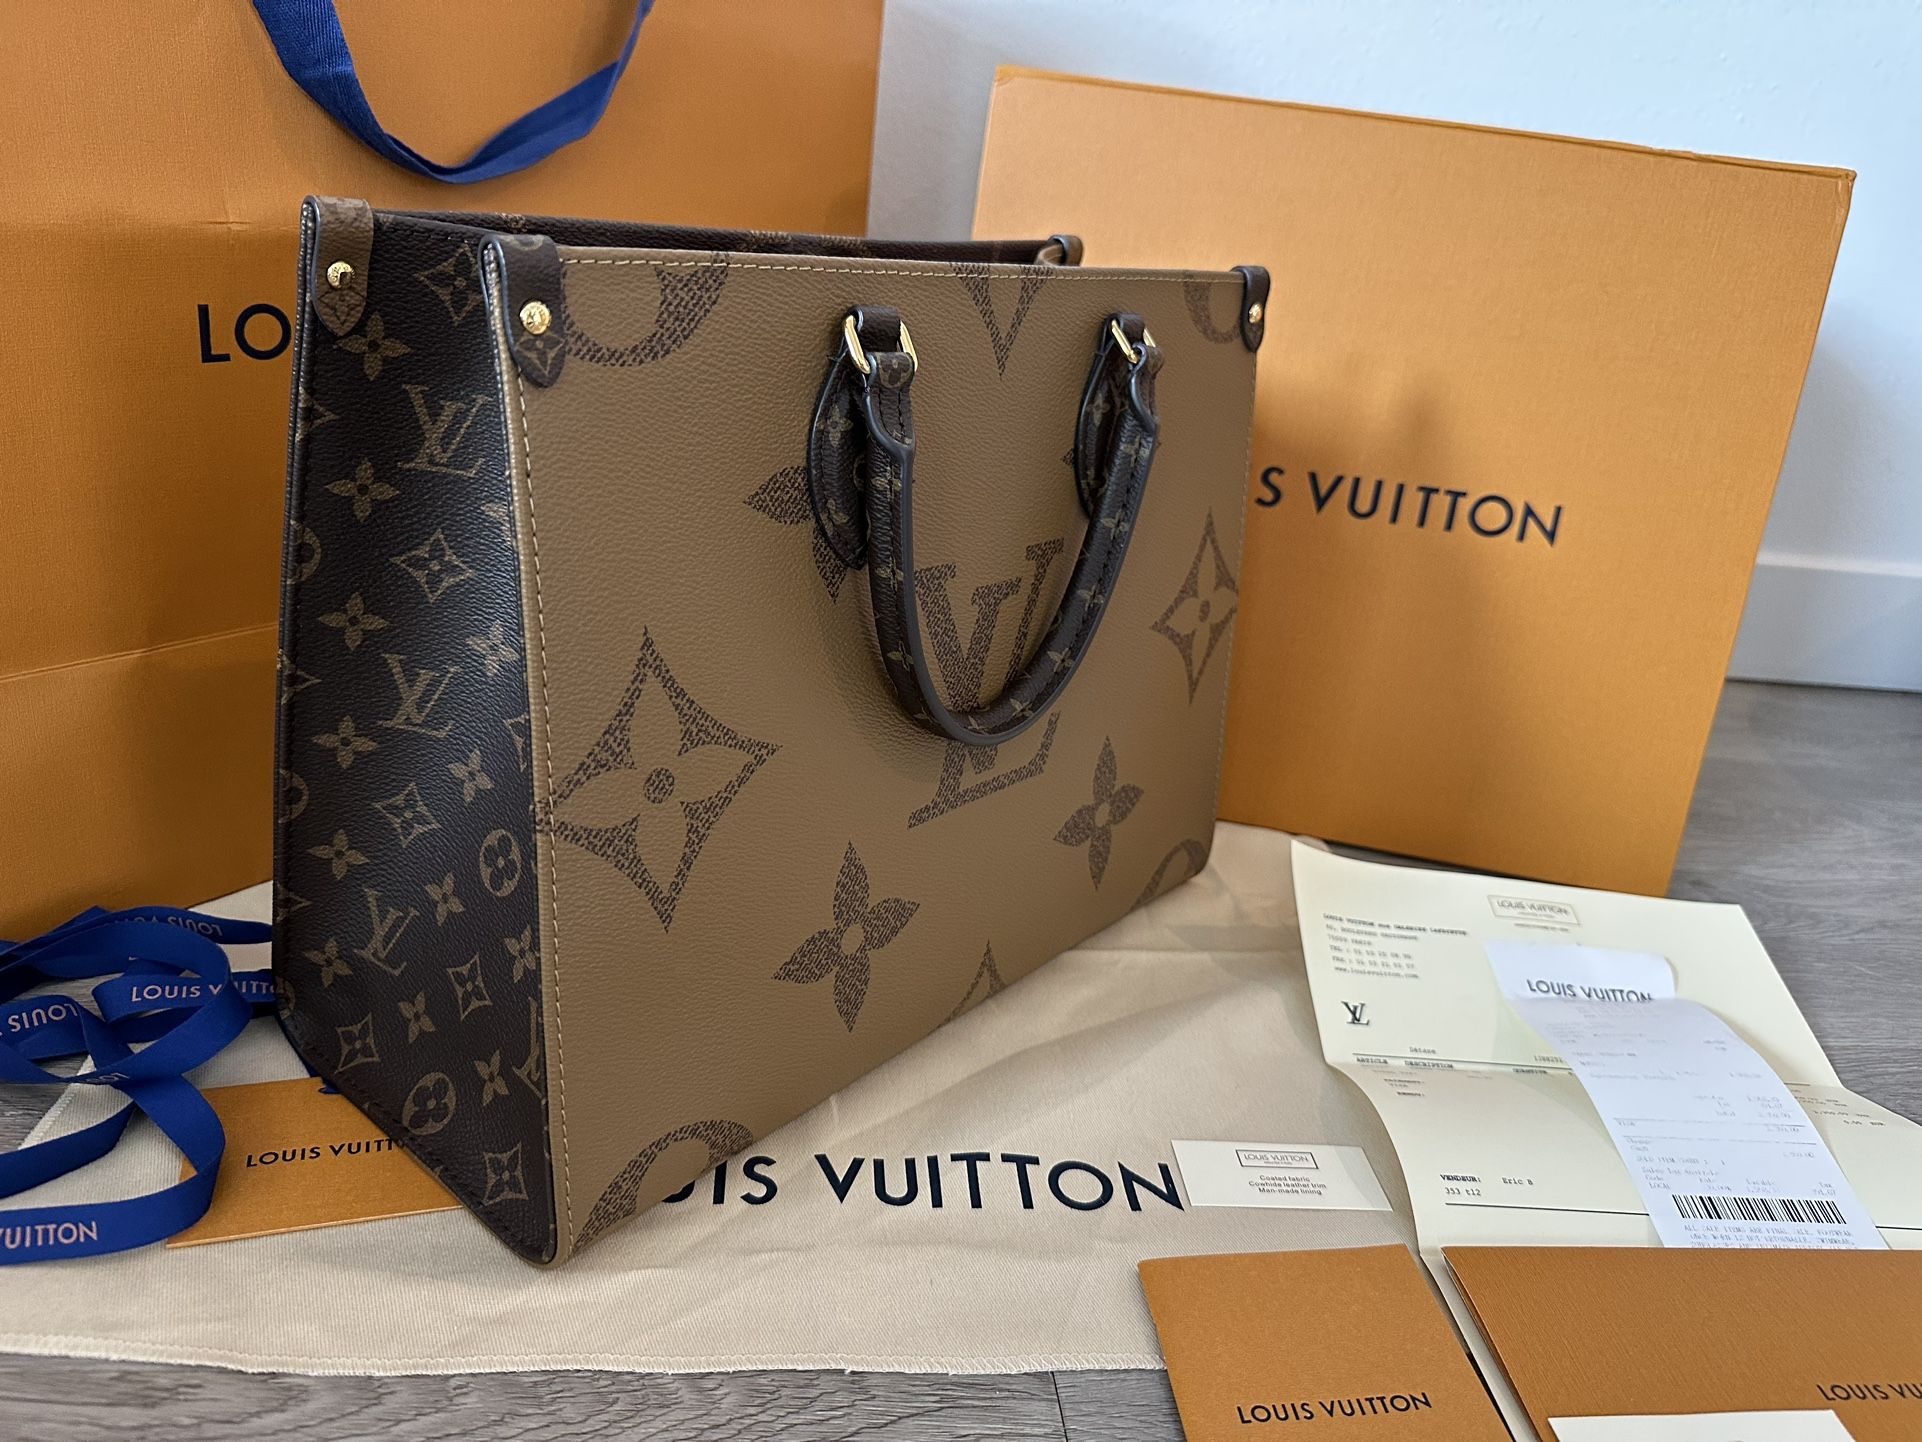 Louis Vuitton - Onthego MM Handbag - Catawiki